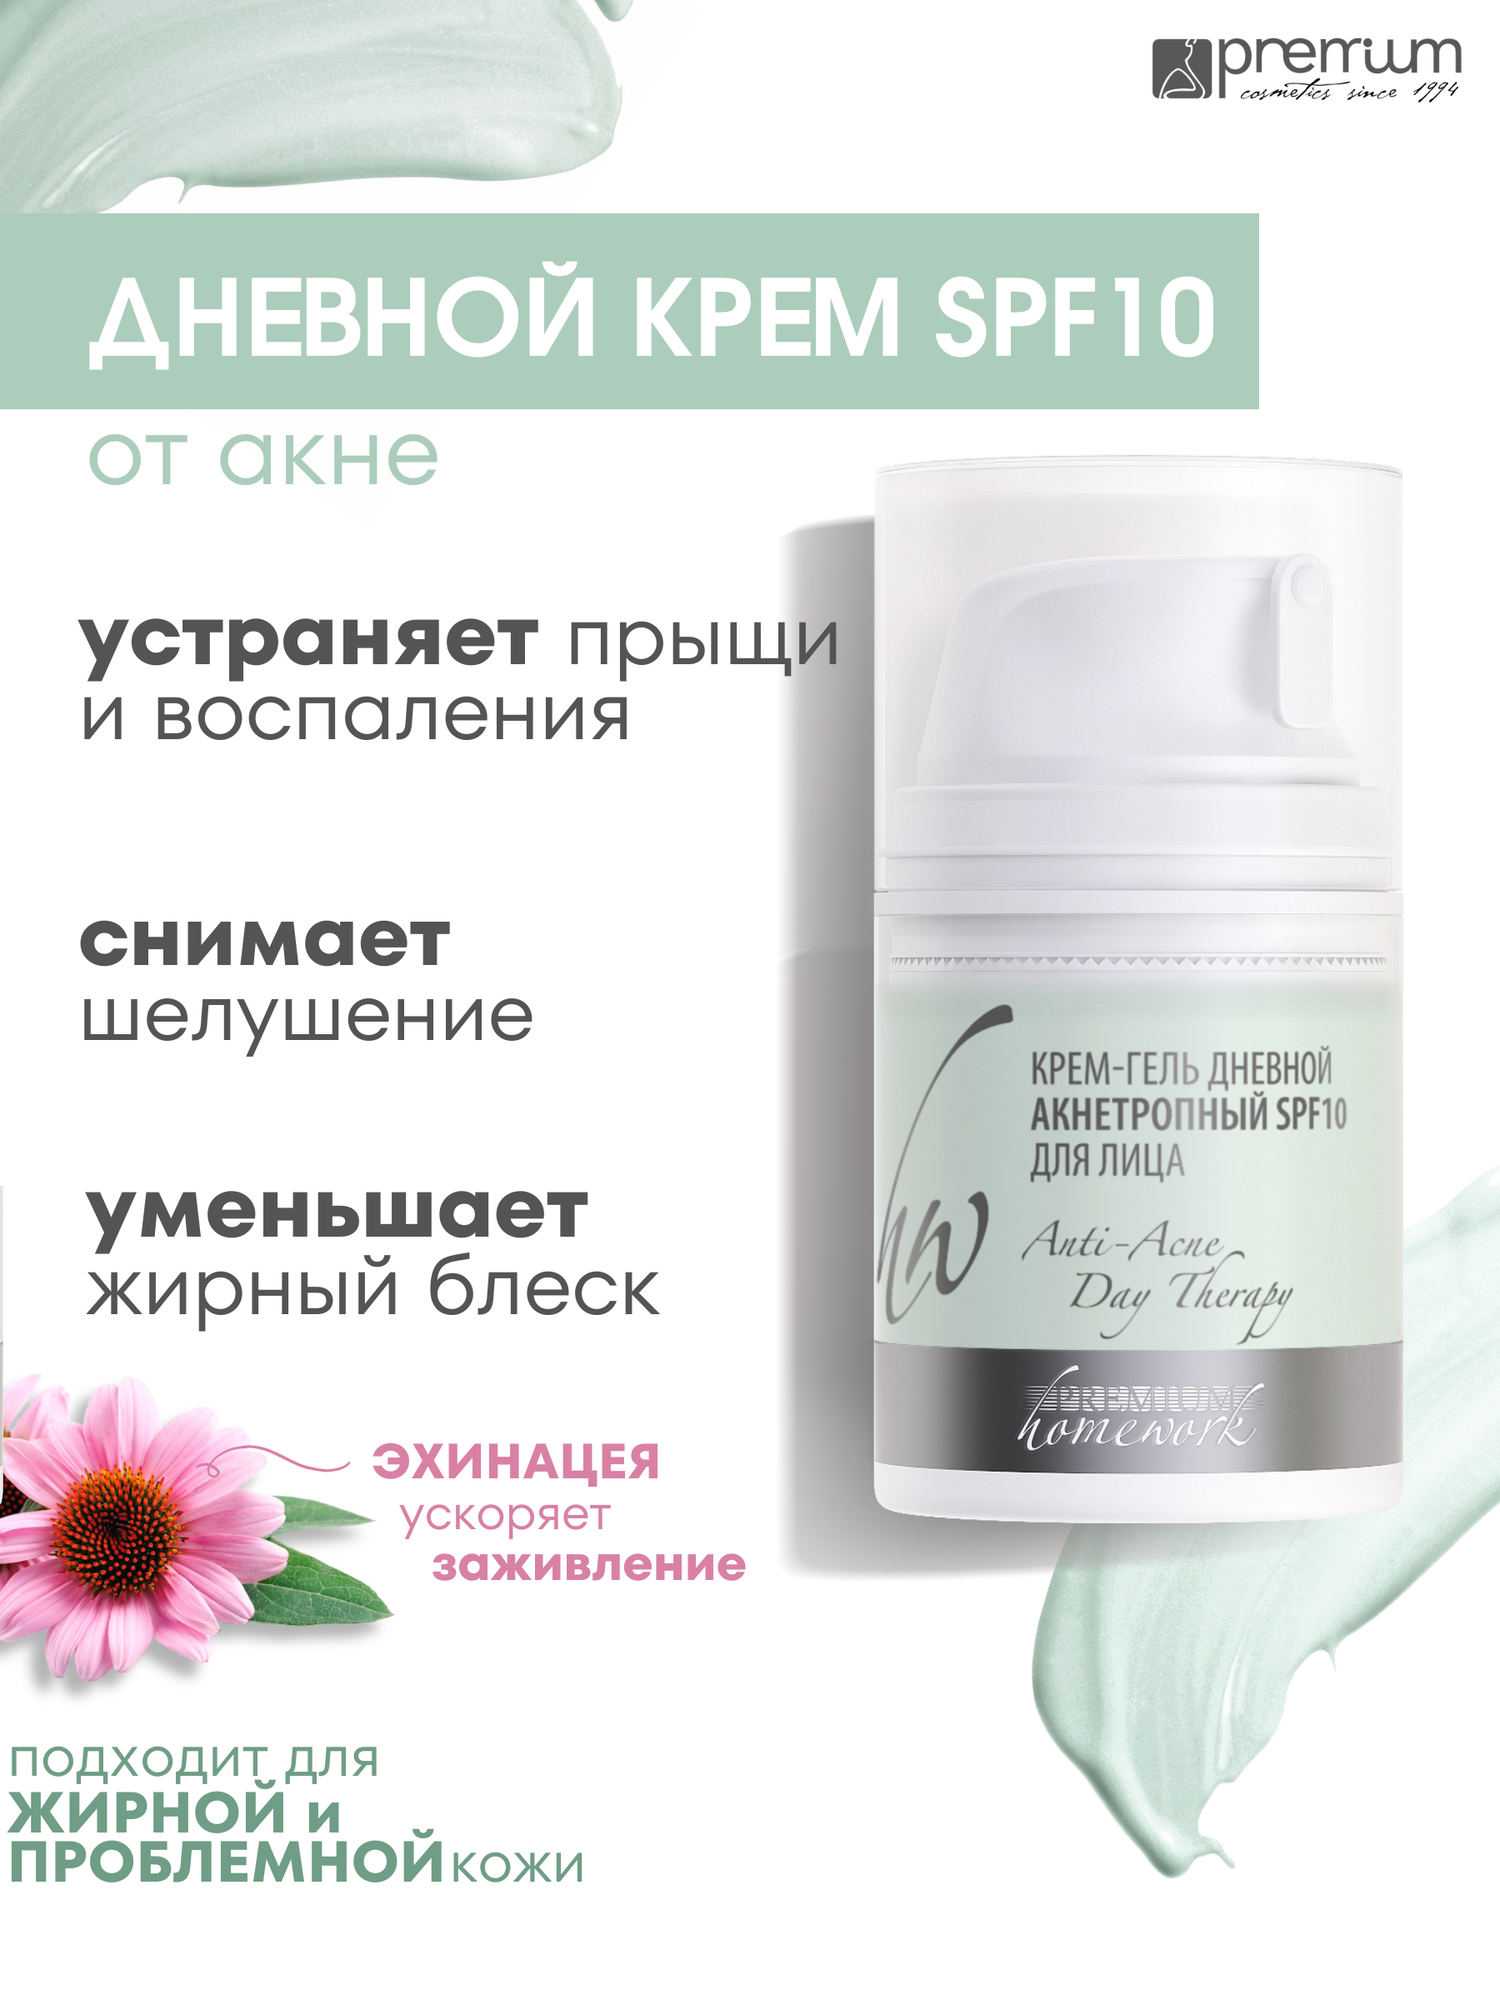 Premium Крем-гель дневной Акнетропный SPF-10